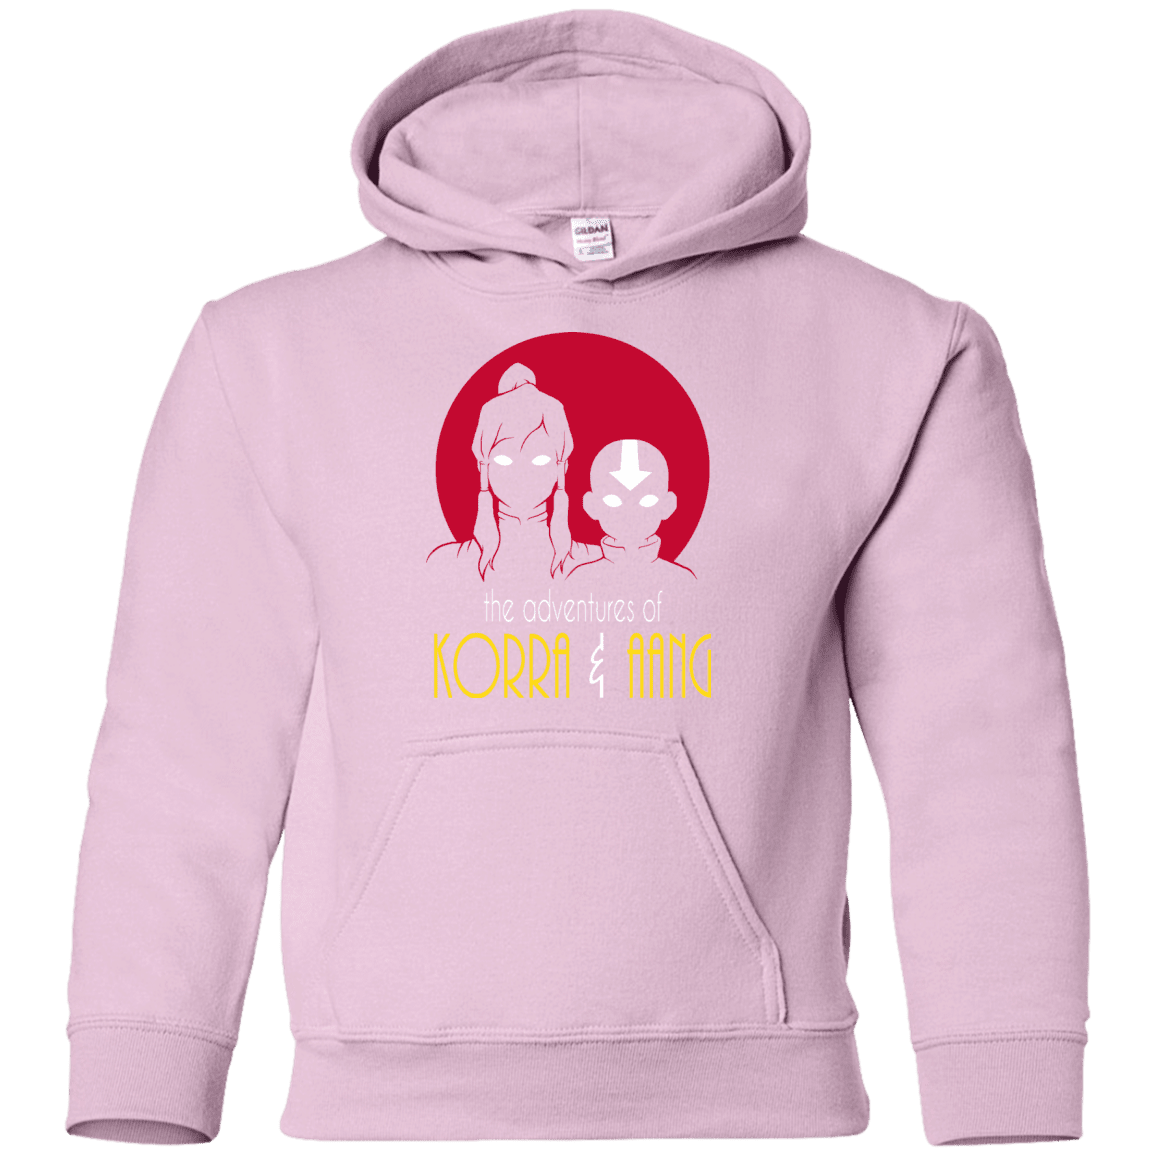 Sweatshirts Light Pink / YS Adventures of Korra & Aang Youth Hoodie